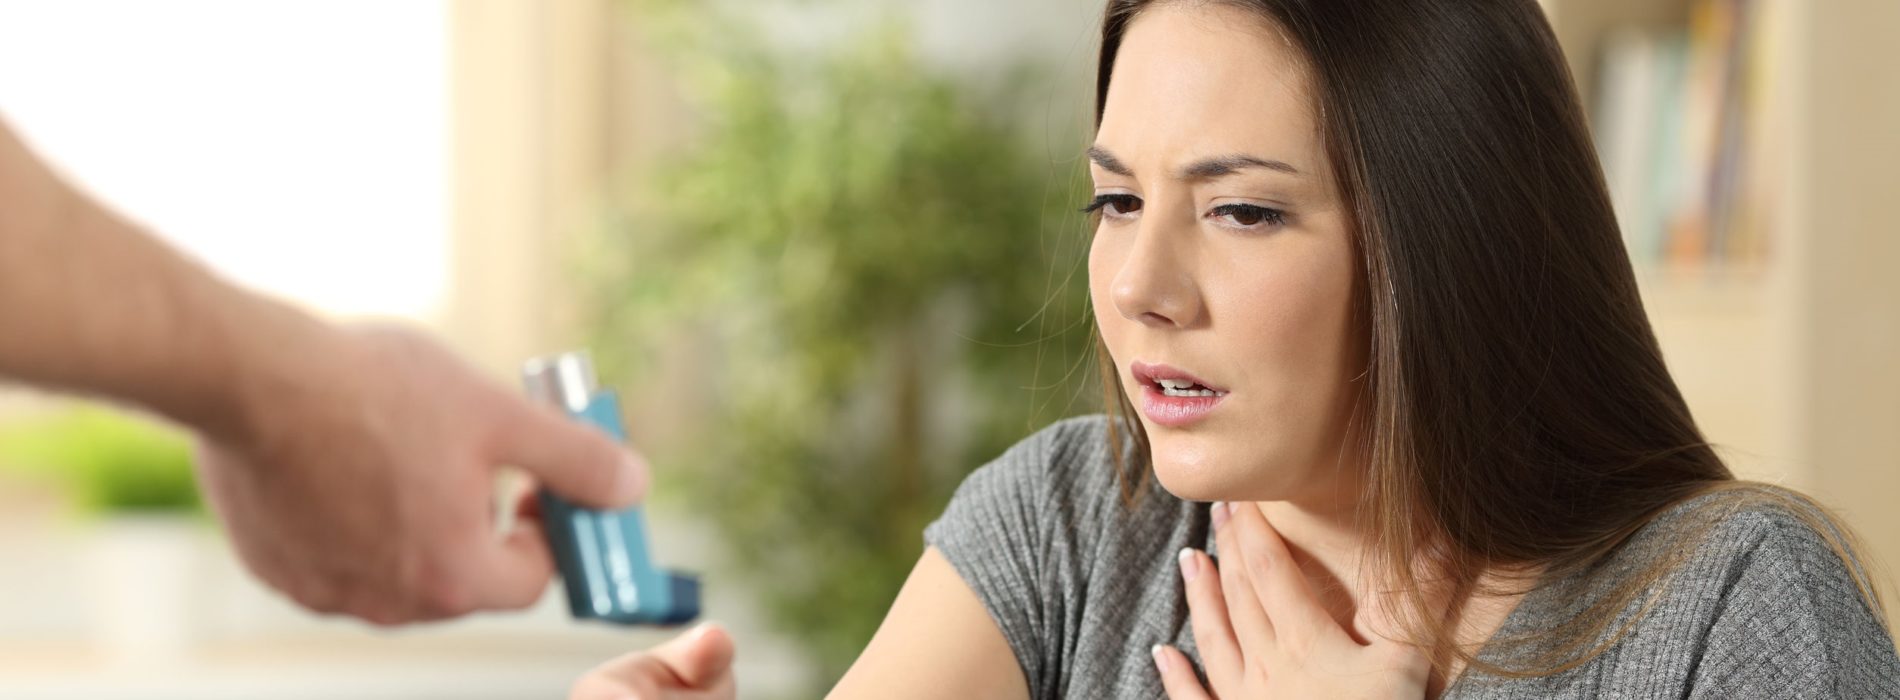 Jak złagodzić objawy astmy? Co mówią badania o stosowaniu CBD w astmie?